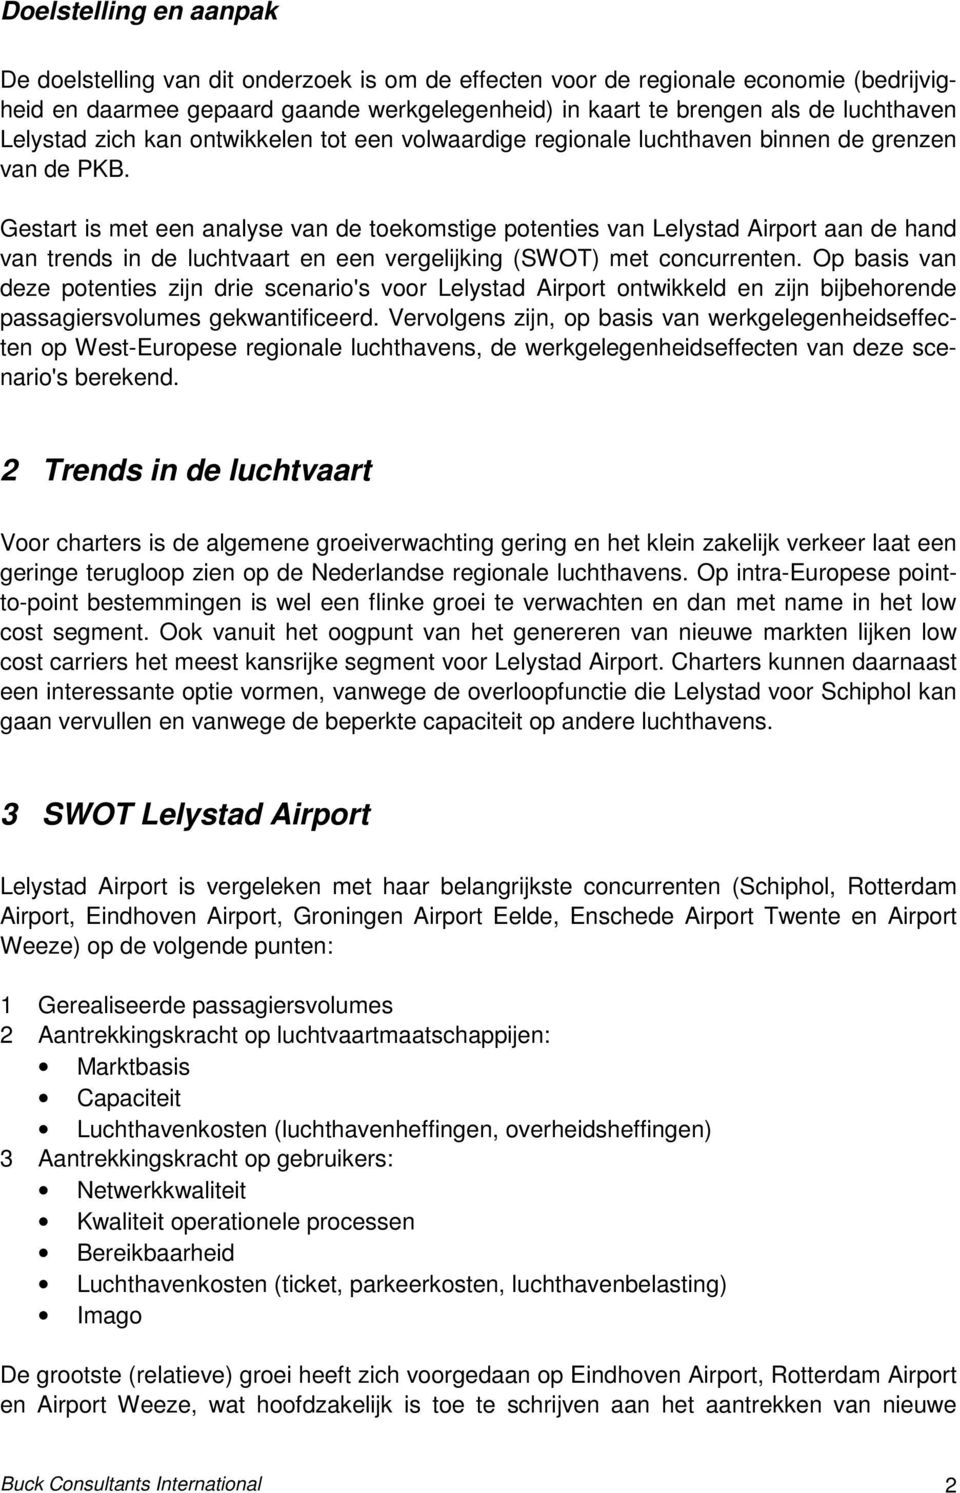 Gestart is met een analyse van de toekomstige potenties van Lelystad Airport aan de hand van trends in de luchtvaart en een vergelijking (SWOT) met concurrenten.